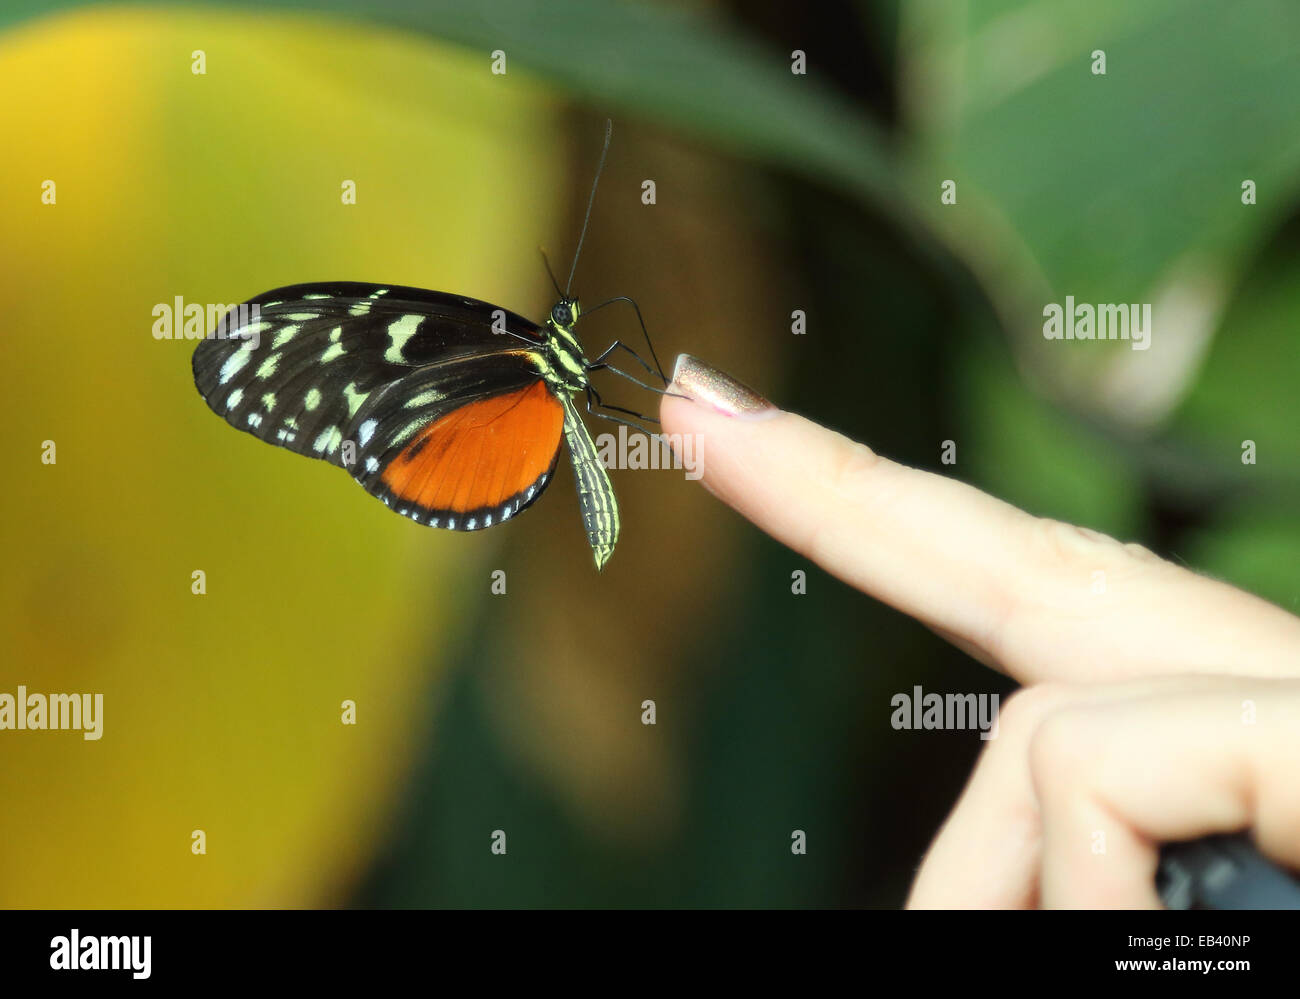 Ein schwarzer-orange Schmetterling mit gelben Flecken auf den Flügeln stützt sich auf eine Frau Fingerspitze. Stockfoto